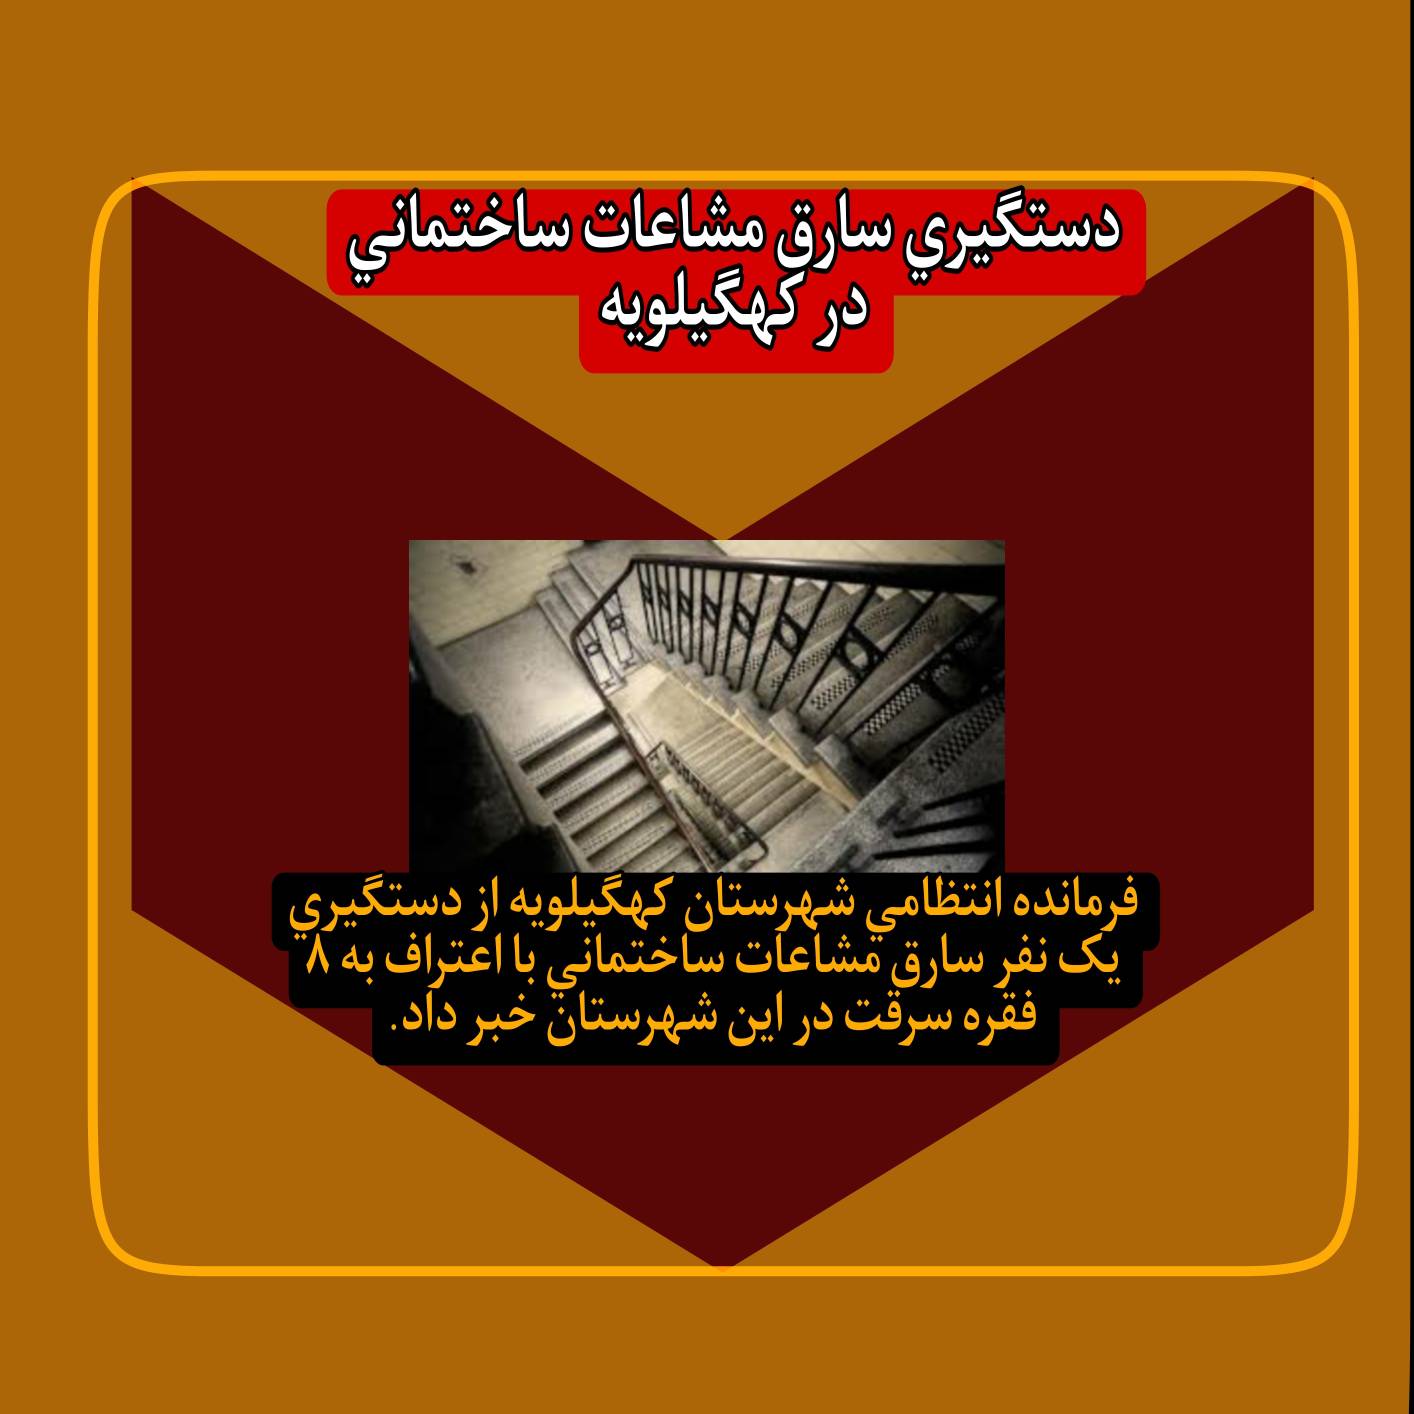 اخبار جدید نیروی انتظامی استان کهگیلویه و بویراحمد